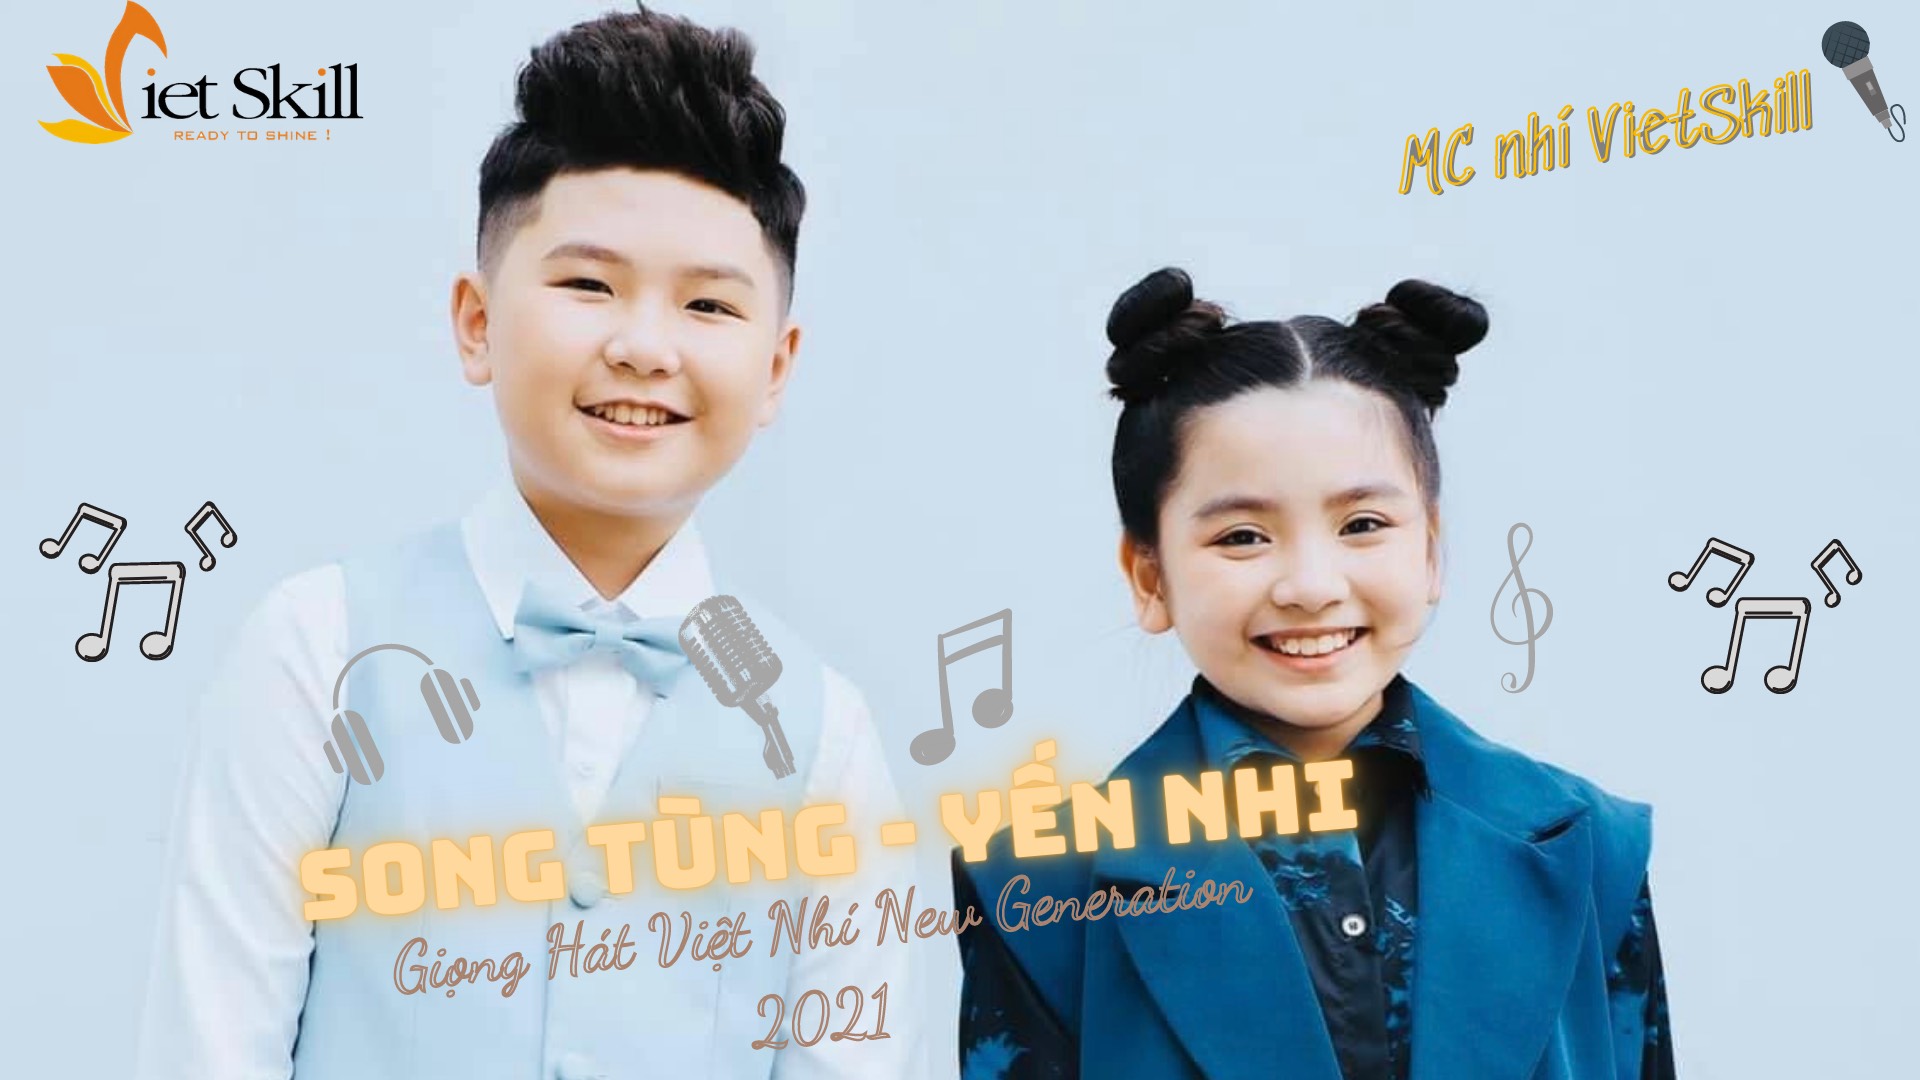 Bắt gặp cặp đôi Giọng Hát Việt Nhí 2021 New Generation Song Tùng - Yến Nhi tại lớp học MC VietSkill